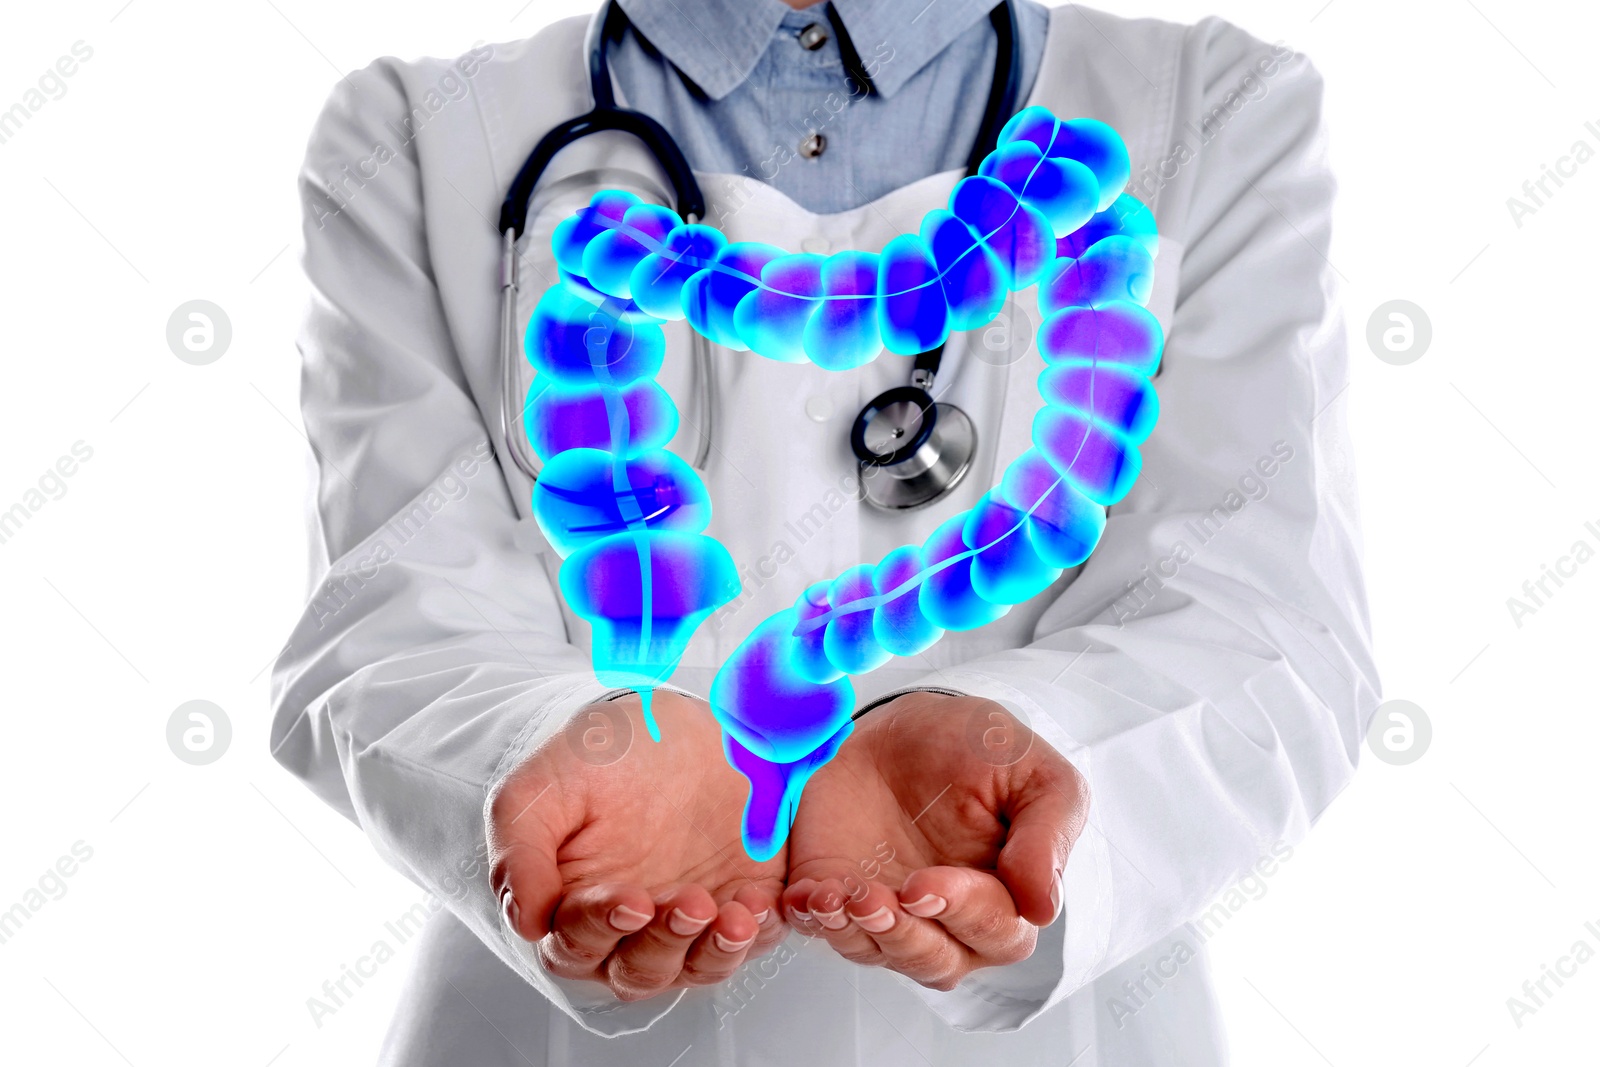 Image of Gastroenterologist holding illustration of large intestine on white background, closeup